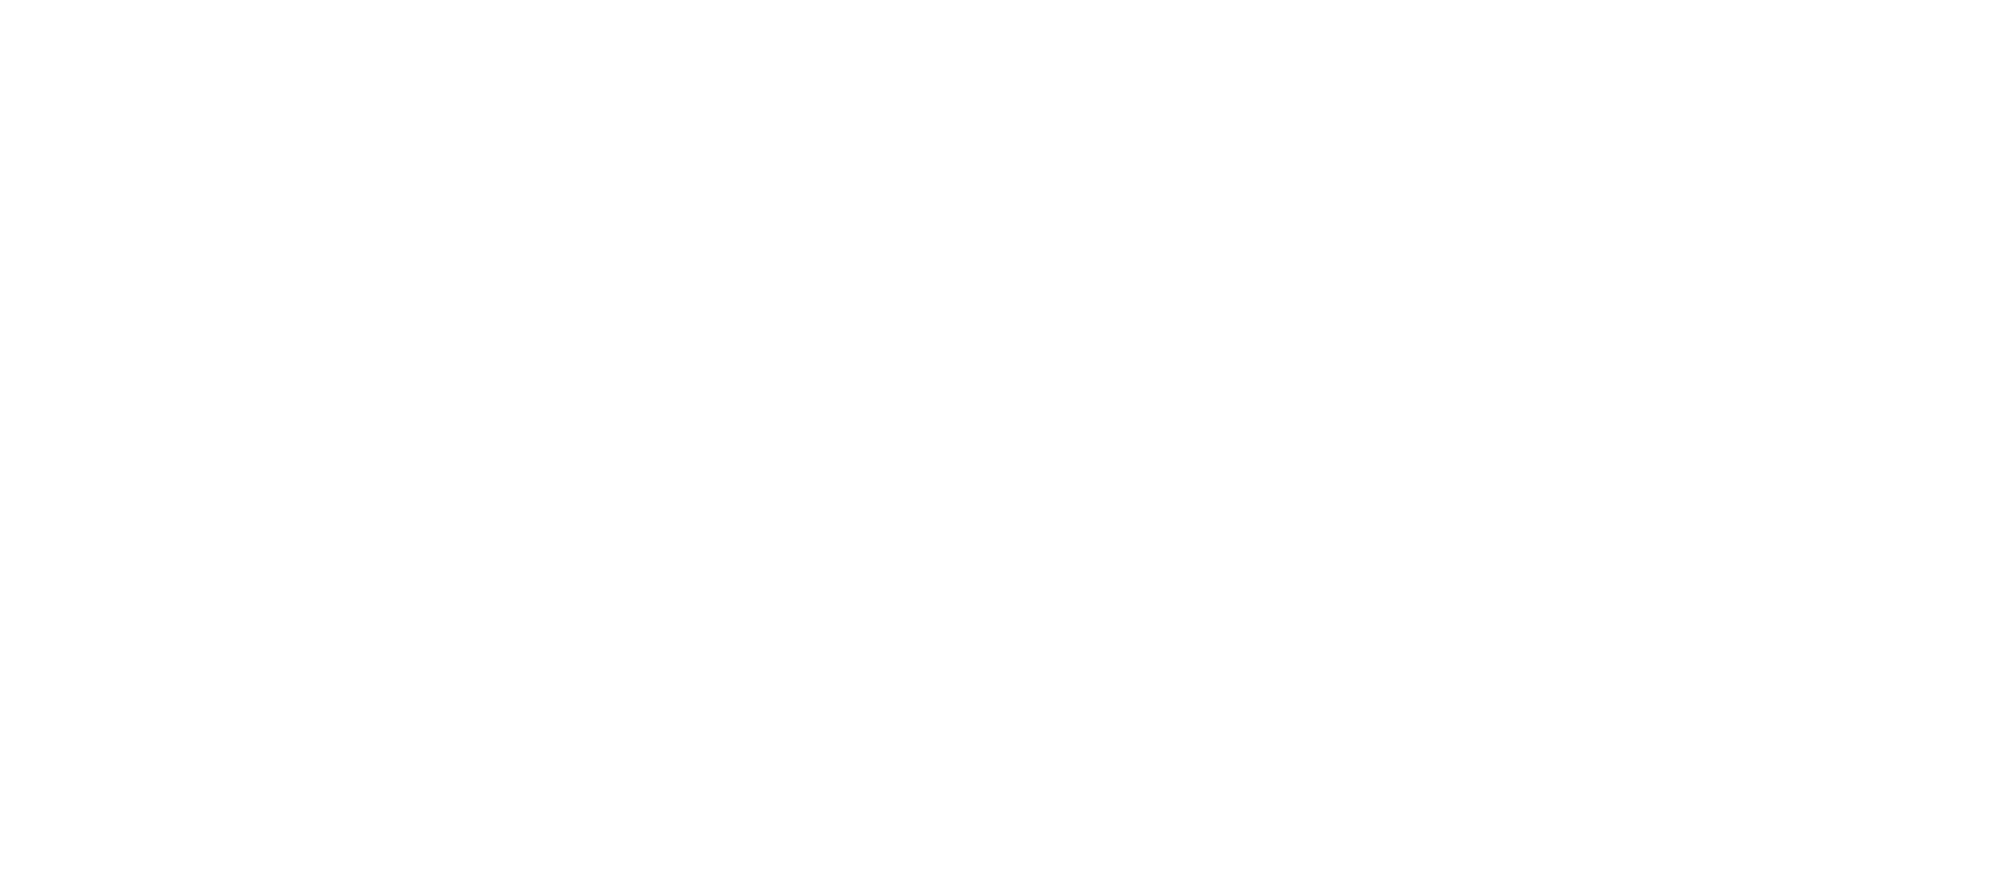 Reggae Rise Up Logo